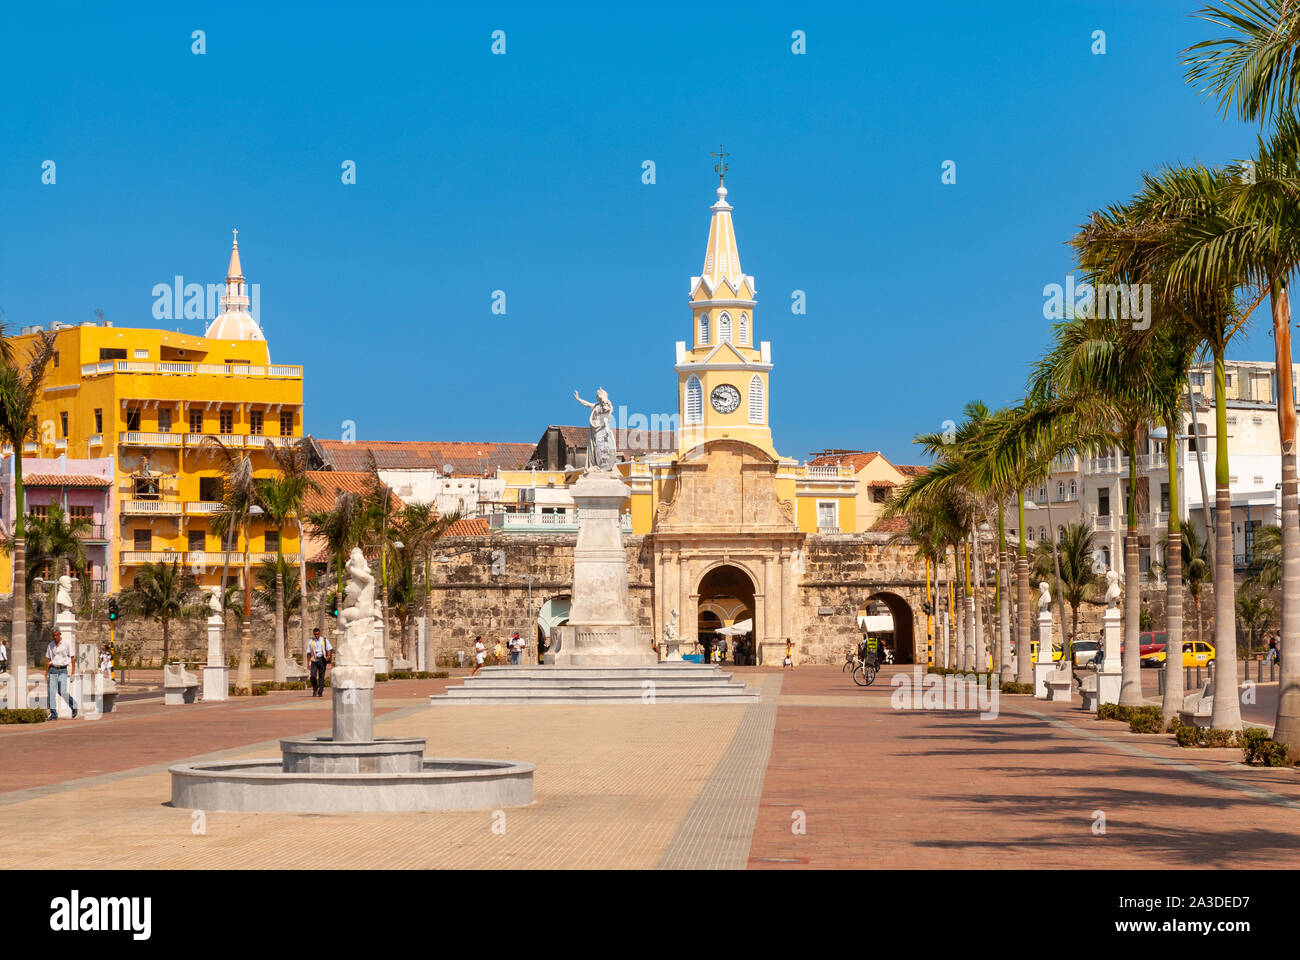 Avenue leading to the Puerta del Reloj, Cartagena de Indias, Colombia Stock Photo